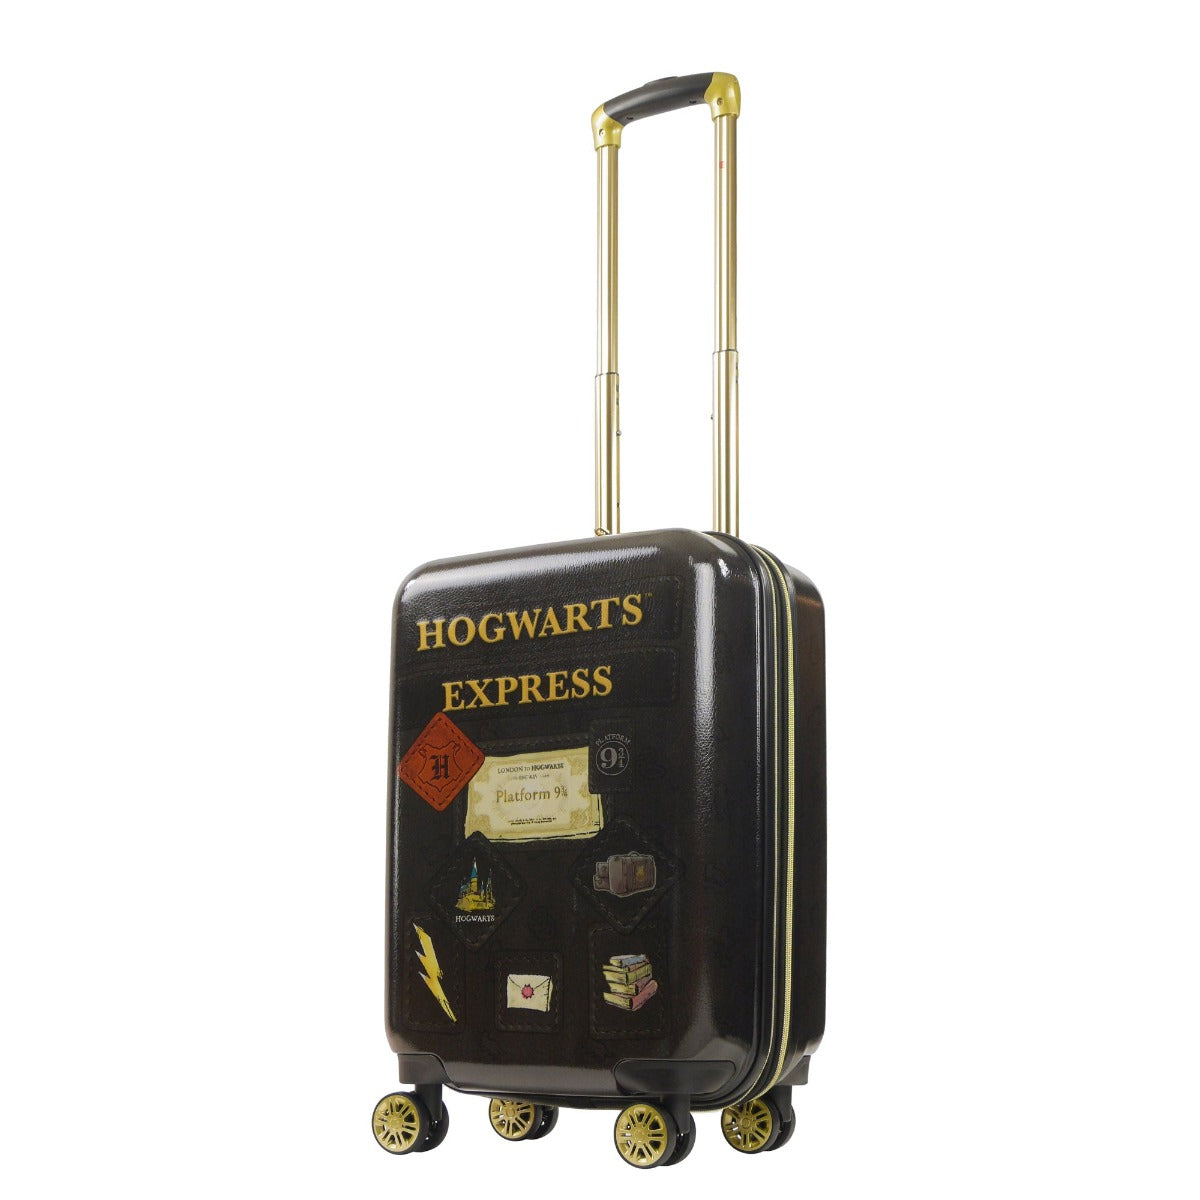 Harry Potter Hogwarts Express 21" Luggage Black Spinner Suitcase Hard sided Set